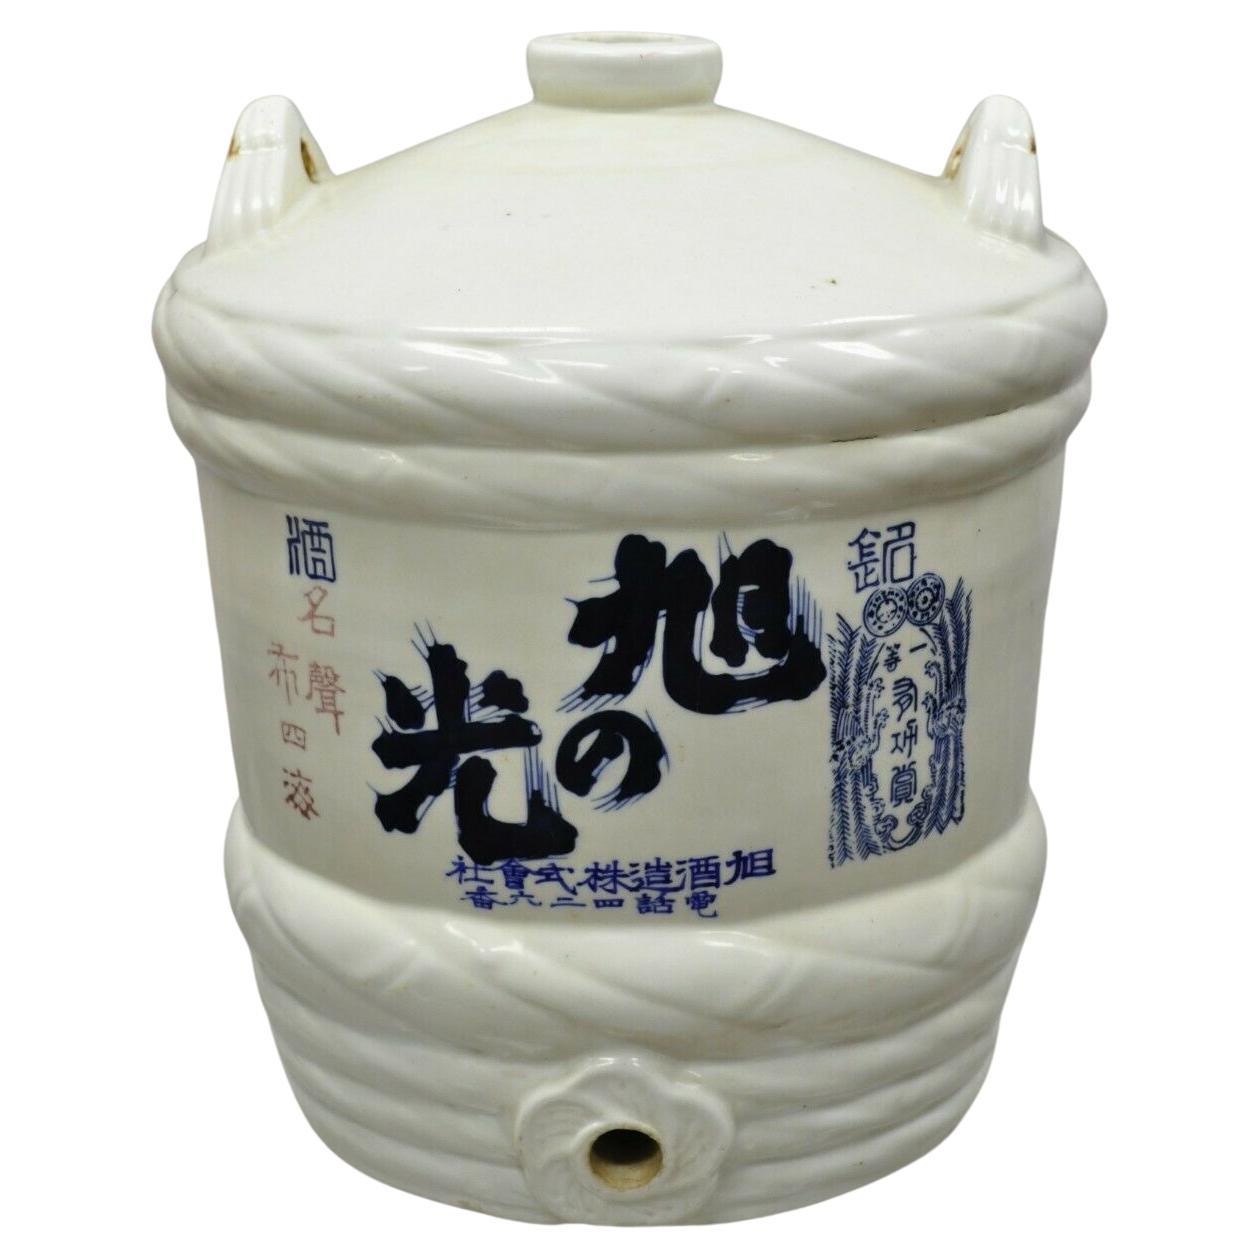 Vintage Japanese Large Stoneware Sake Barrel Sake Jug Cask 'B'